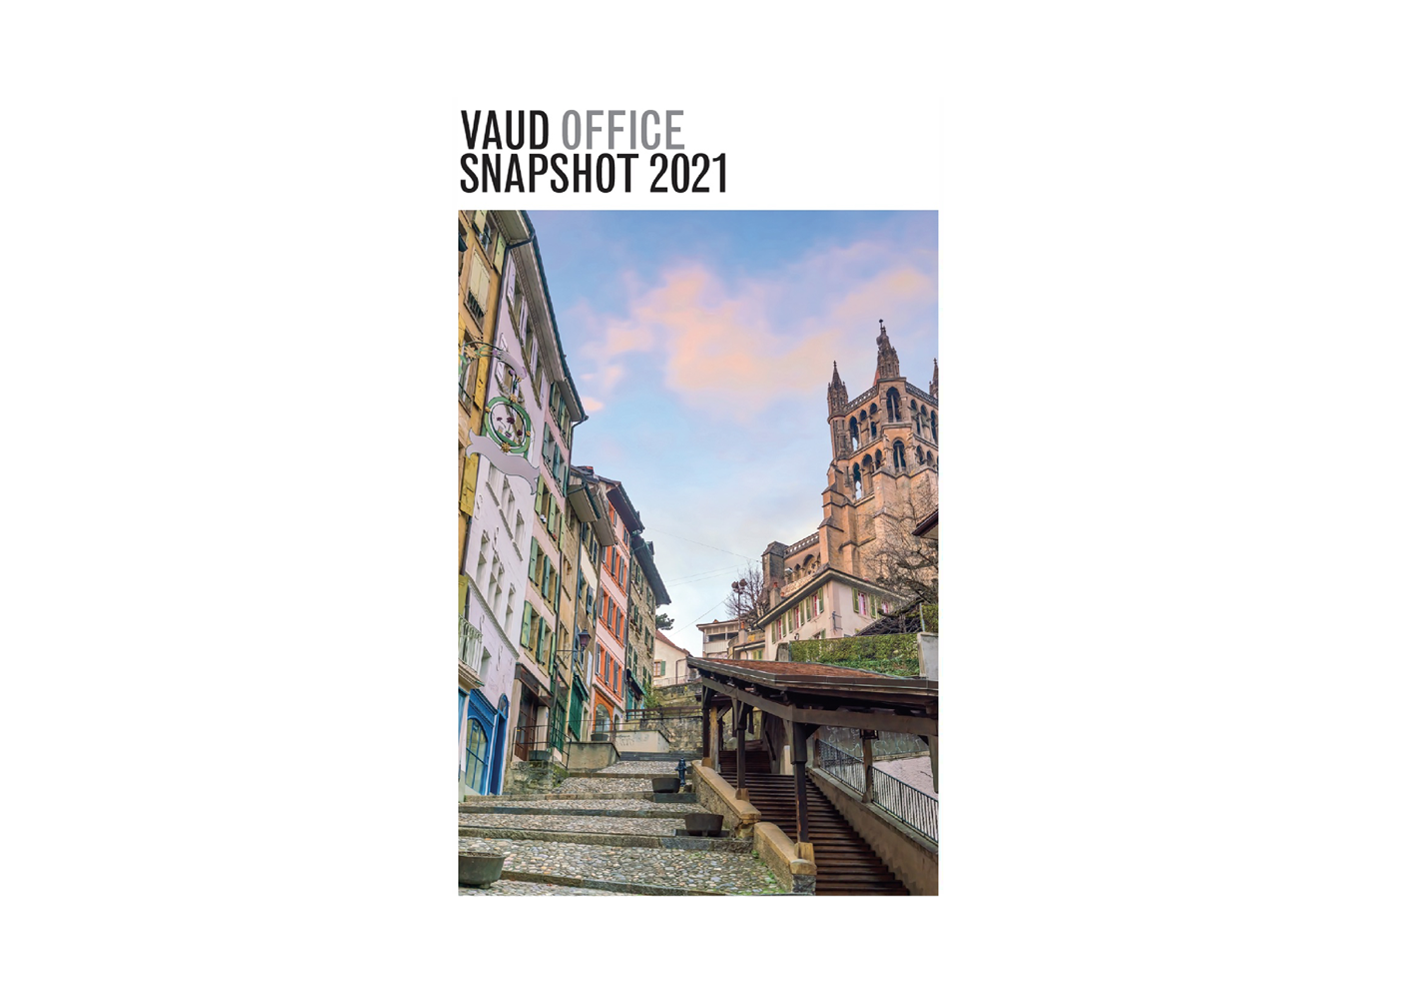 Vaud Office Snapshot 2021